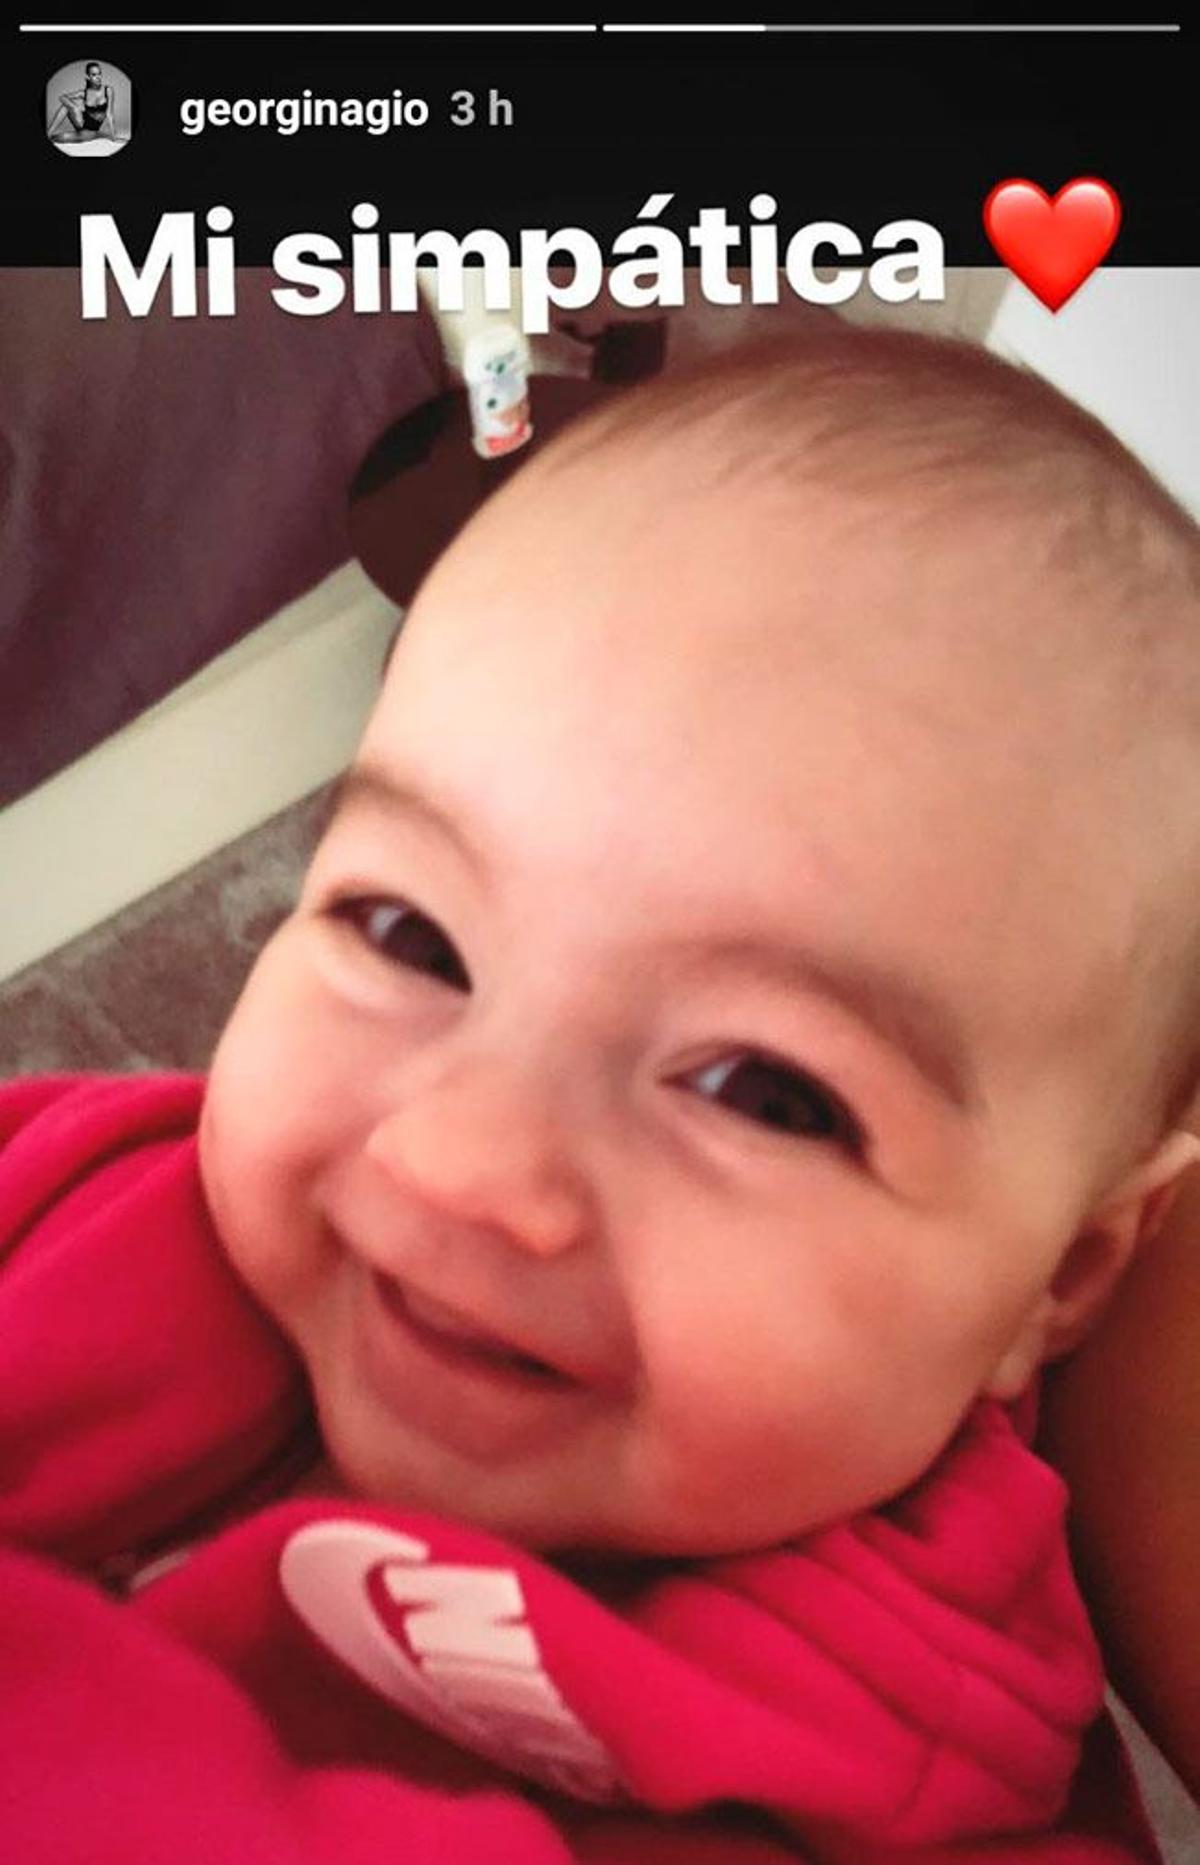 Alana Martina, la hija de Cristiano Ronaldo y Georgina Rodríguez, sonriente en Instagram stories